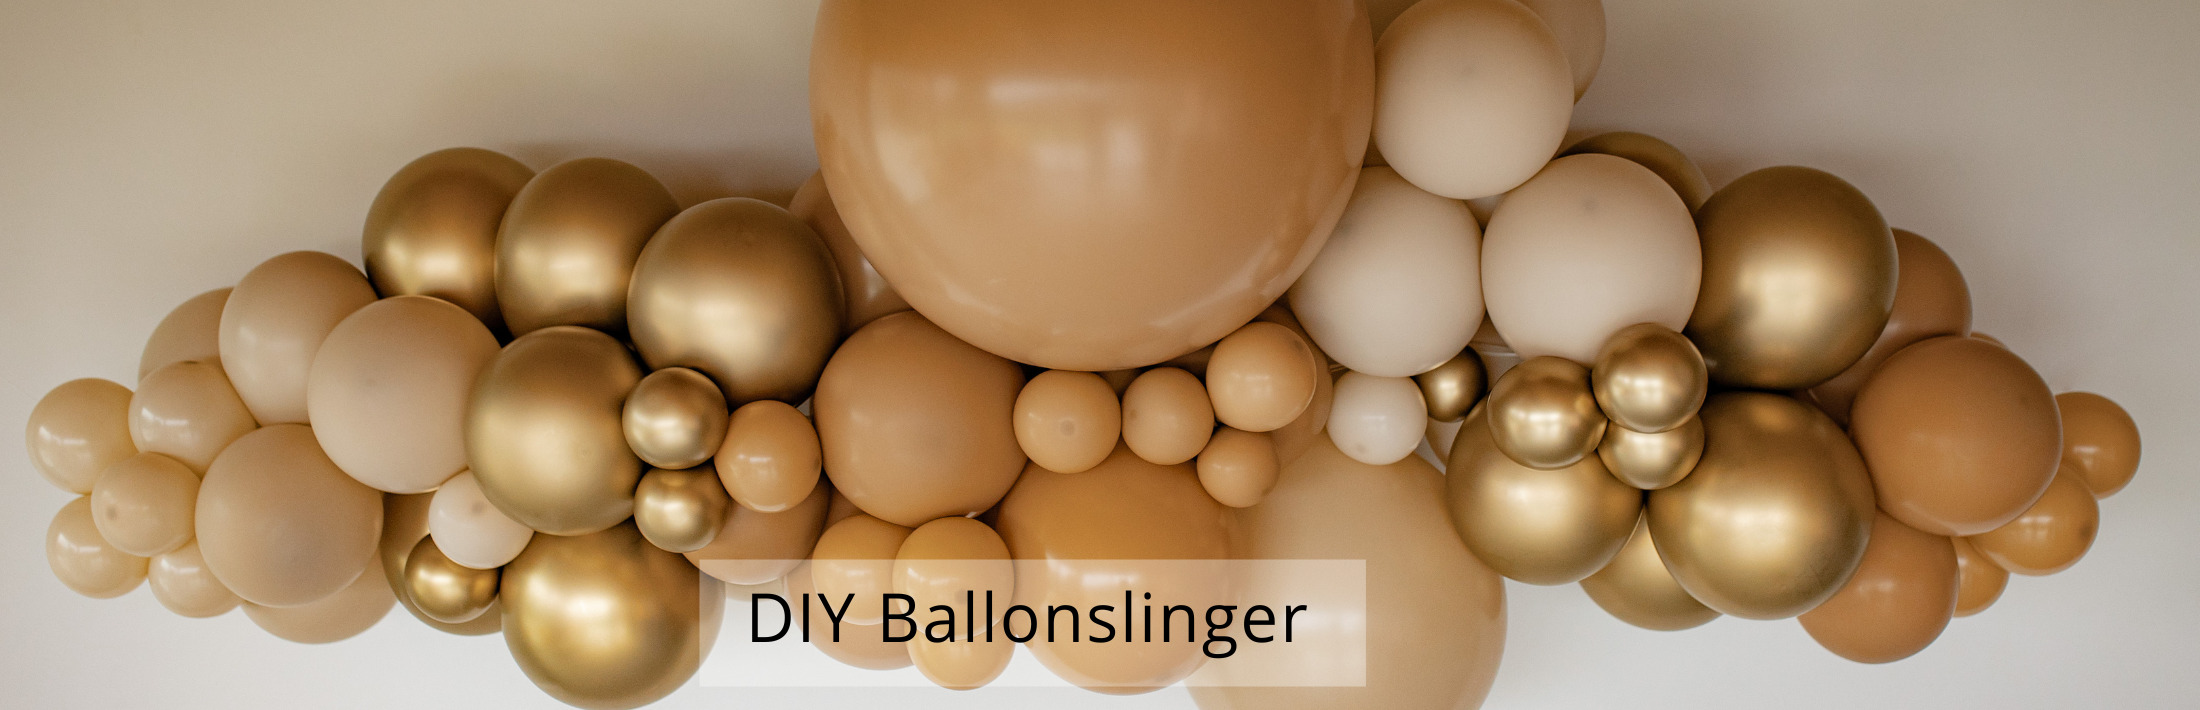 DIY Ballonslinger